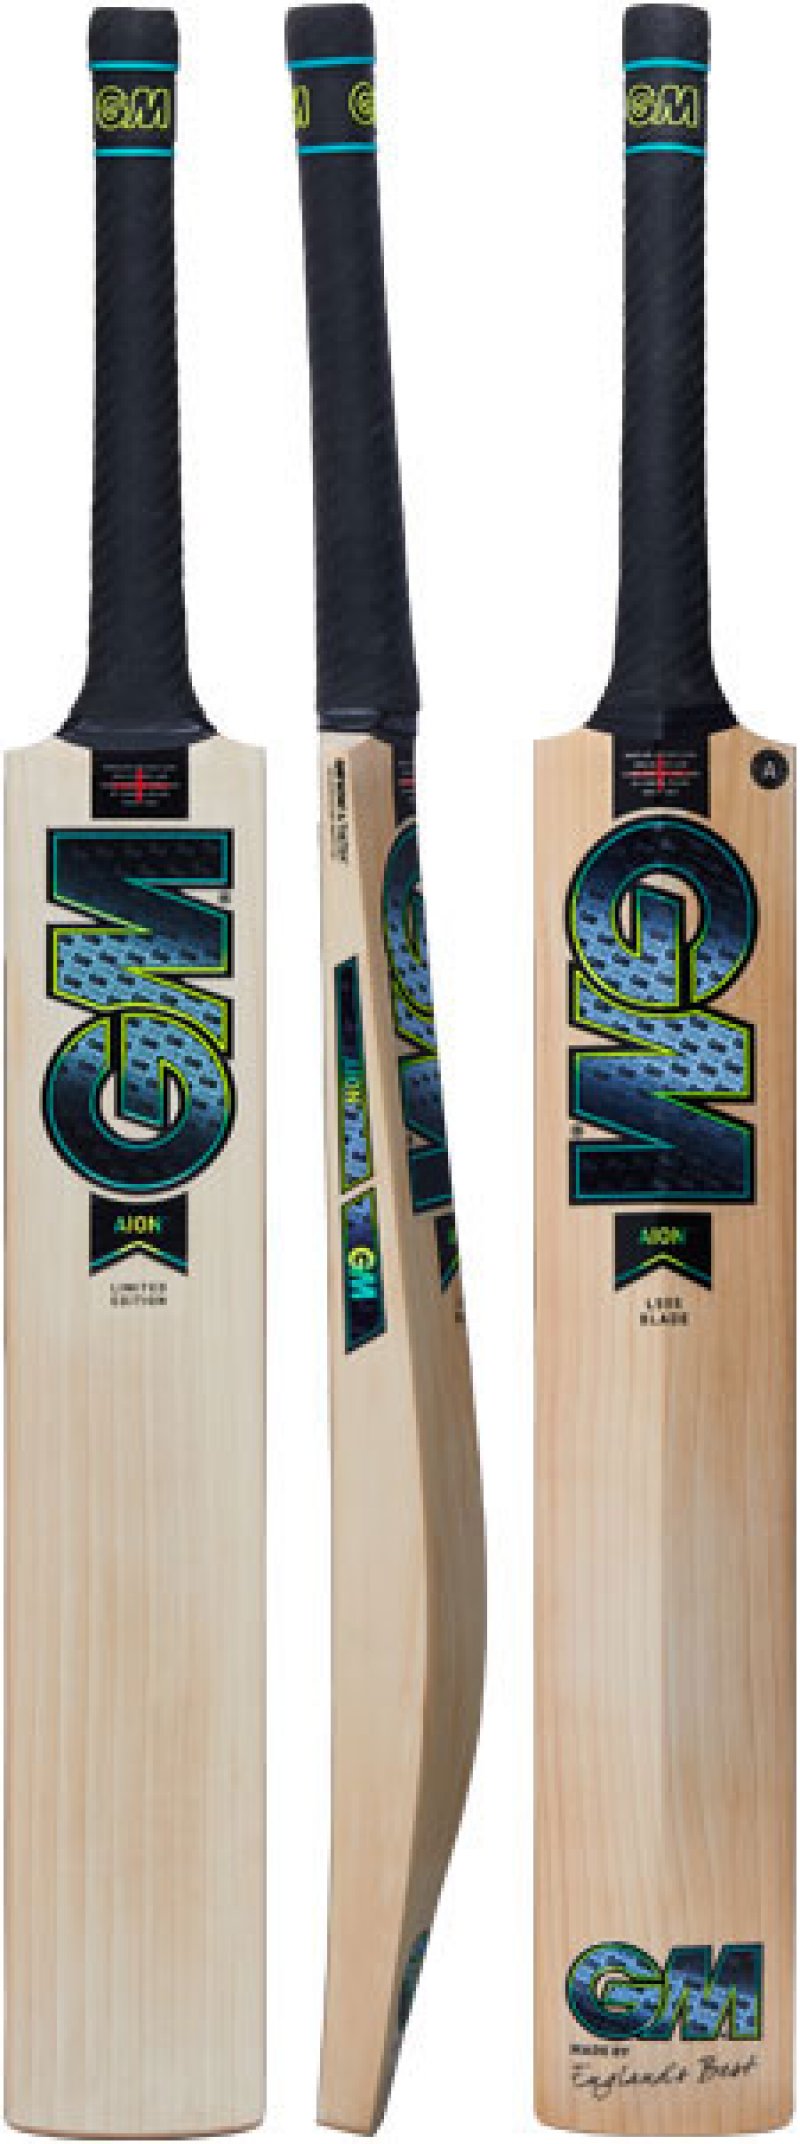 Gunn and Moore Aion DXM 606 Junior Cricket Bat